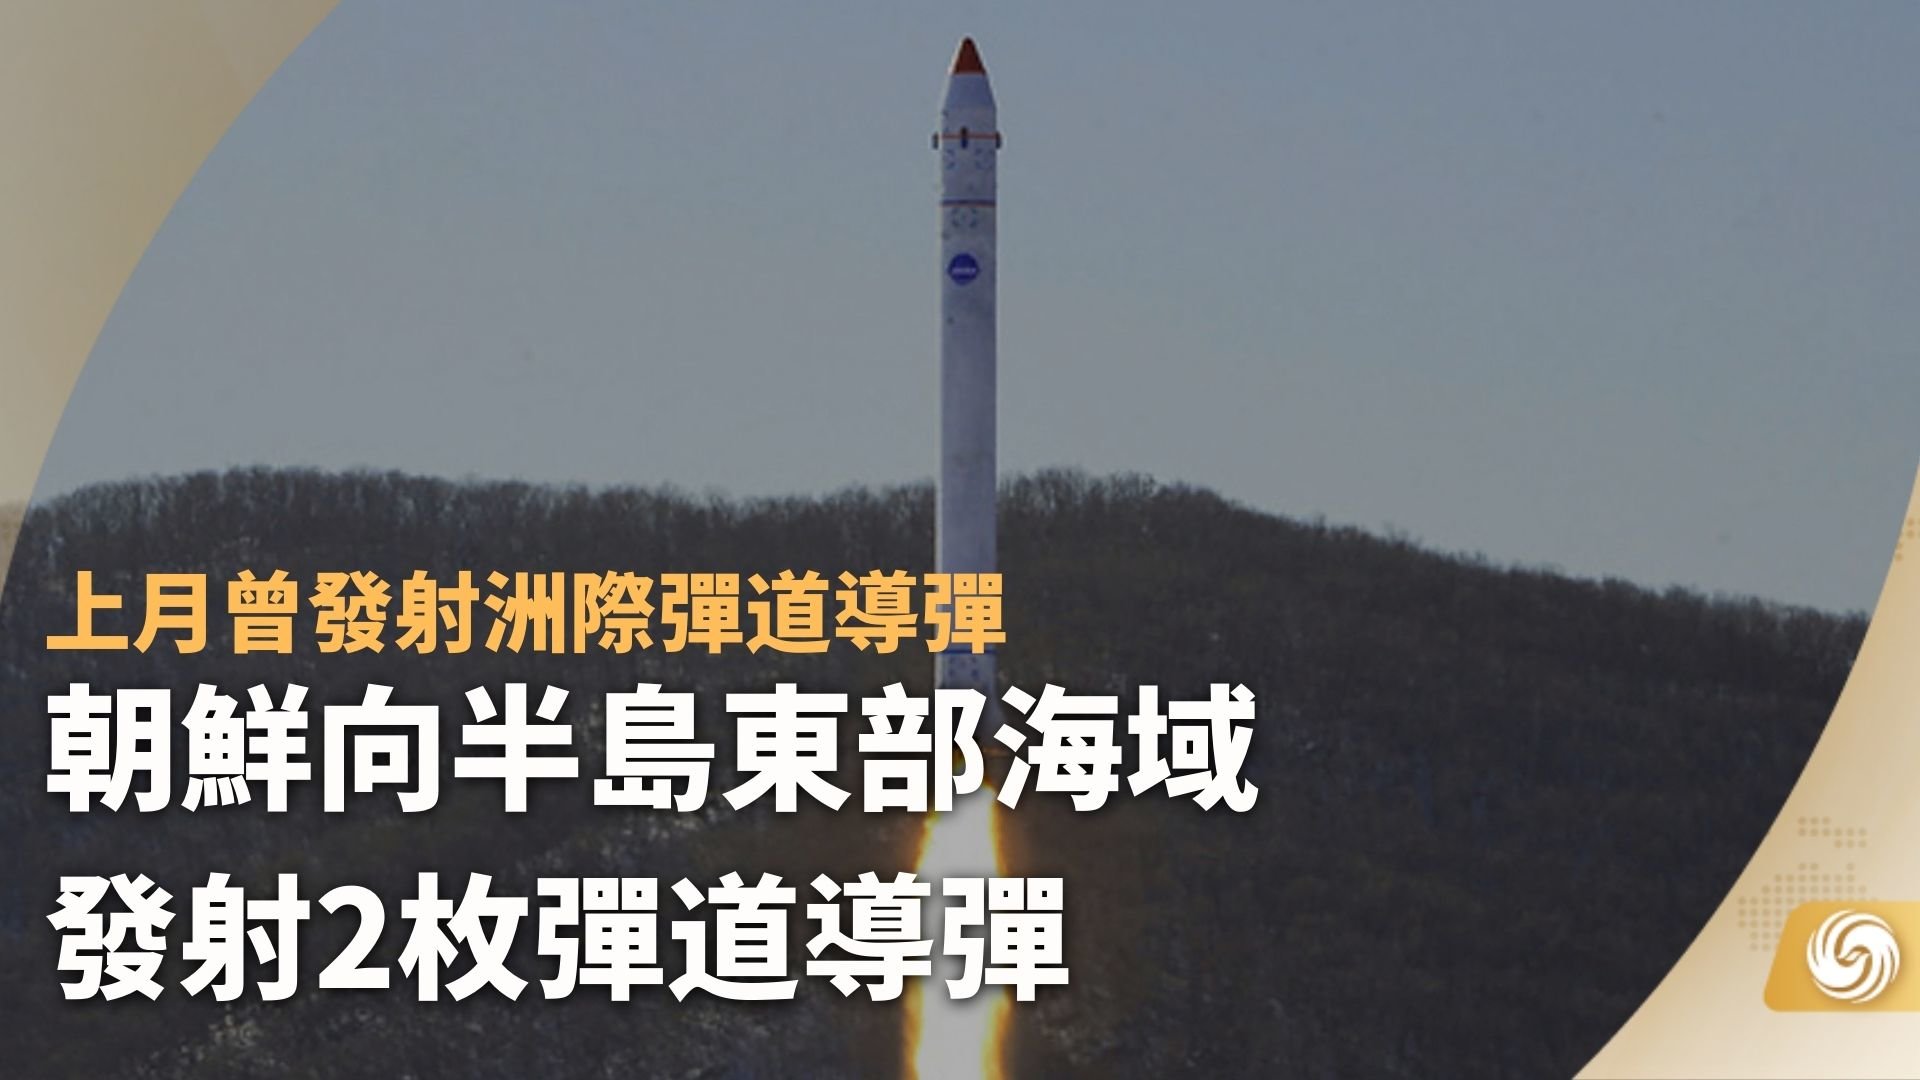 朝鲜向半岛东部海域发射2枚弹道导弹